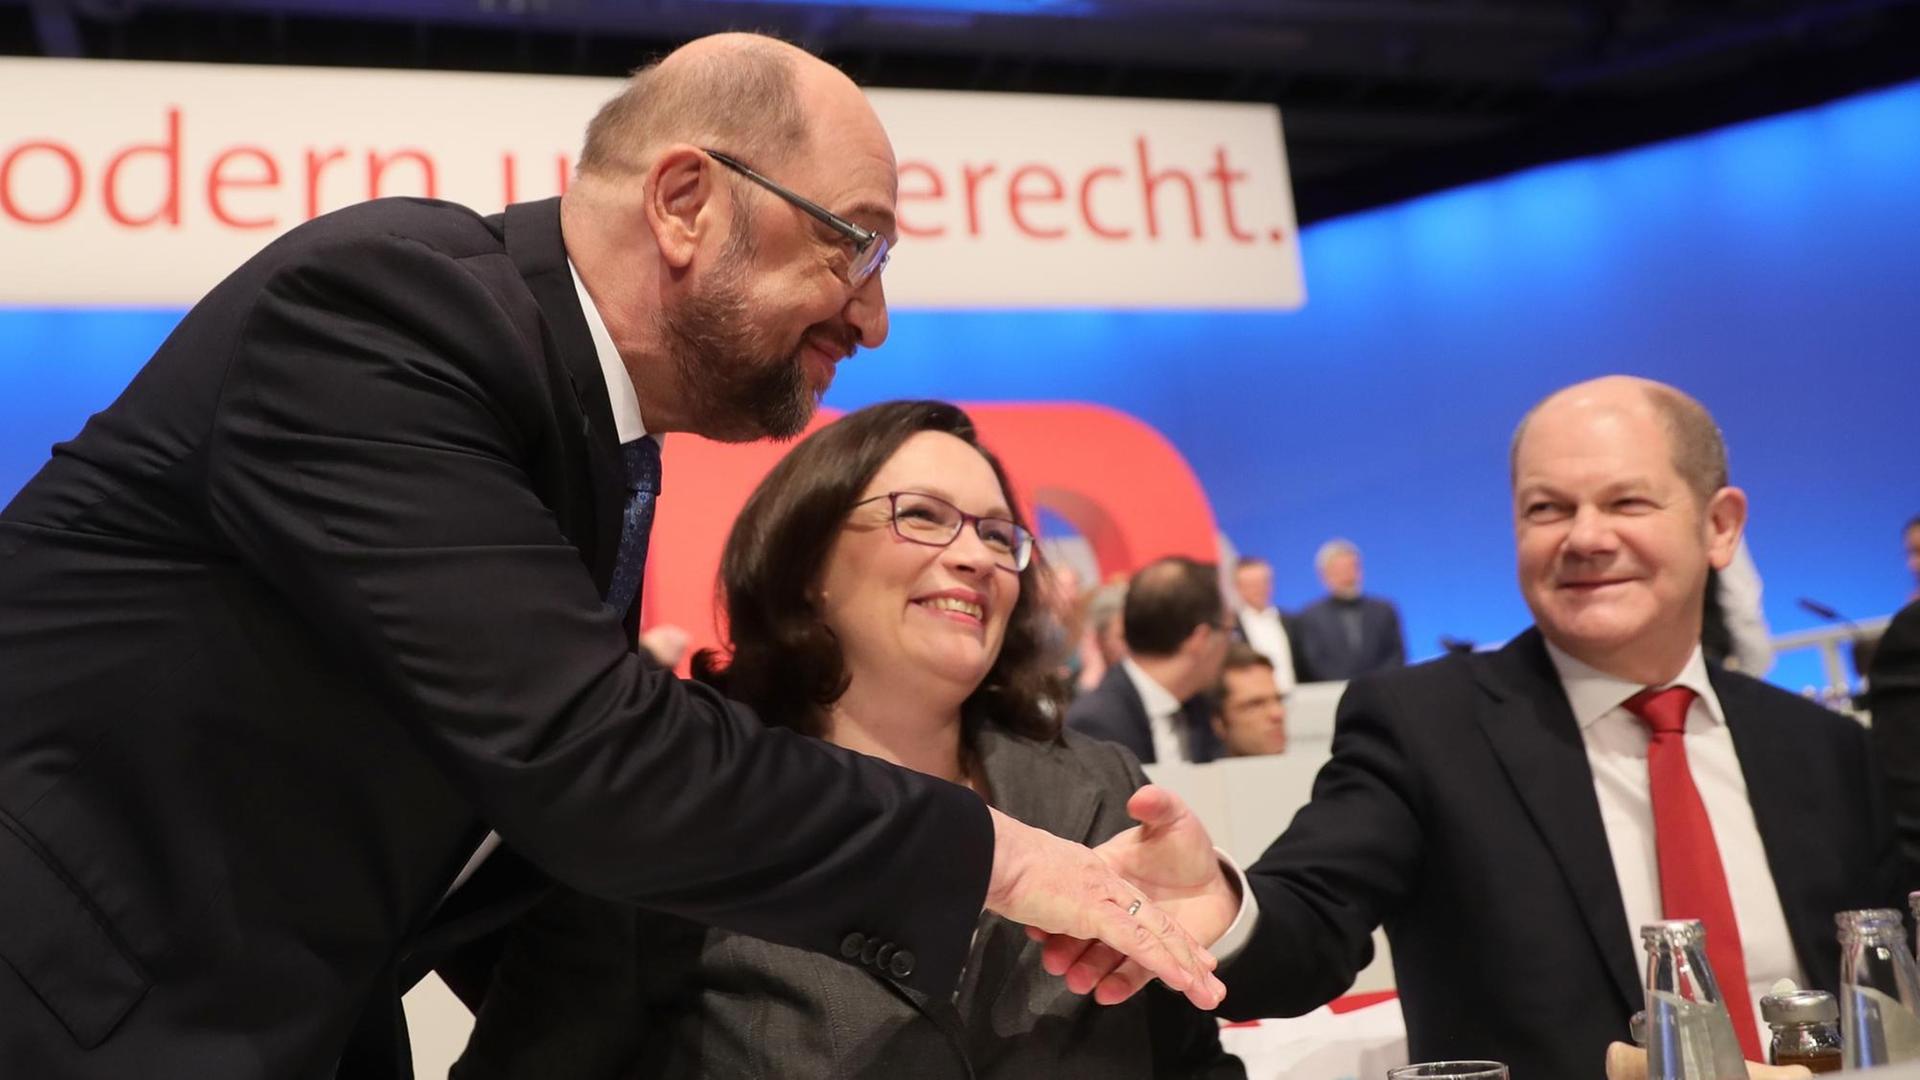 Bundesparteitag der SPD in Berlin. Der Vorsitzende, Martin Schulz begrüßt die Fraktions-Chefin Andrea Nahles und Hamburgs Bürgermeister Olaf Scholz.